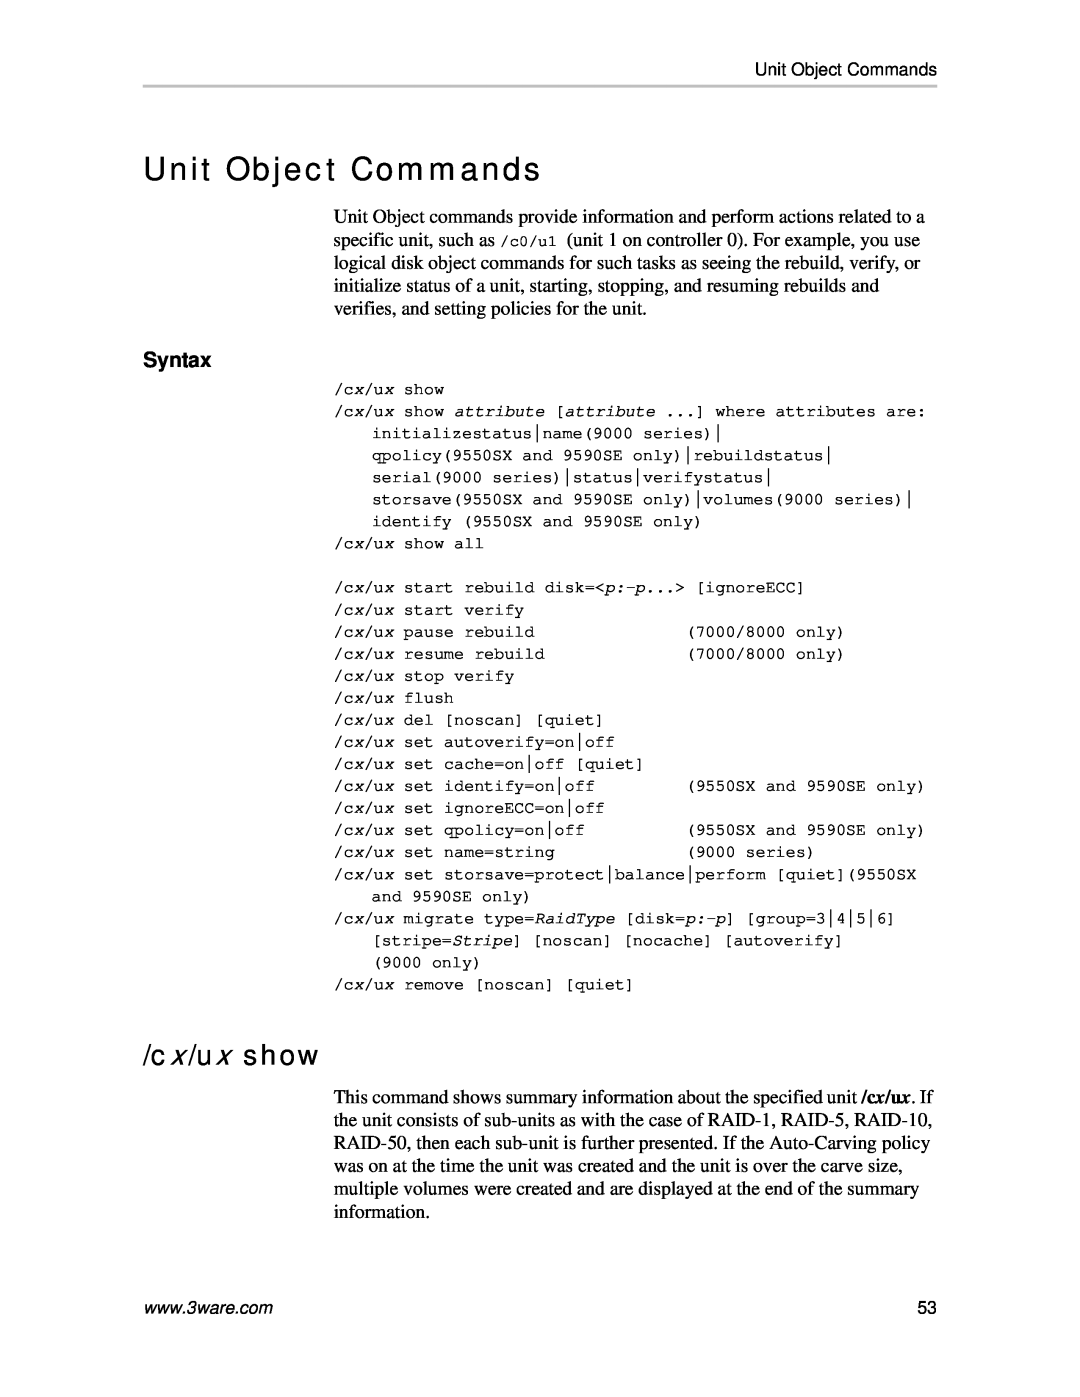 AMCC 9590SE-4ME manual Unit Object Commands, cx/ux show, Syntax 